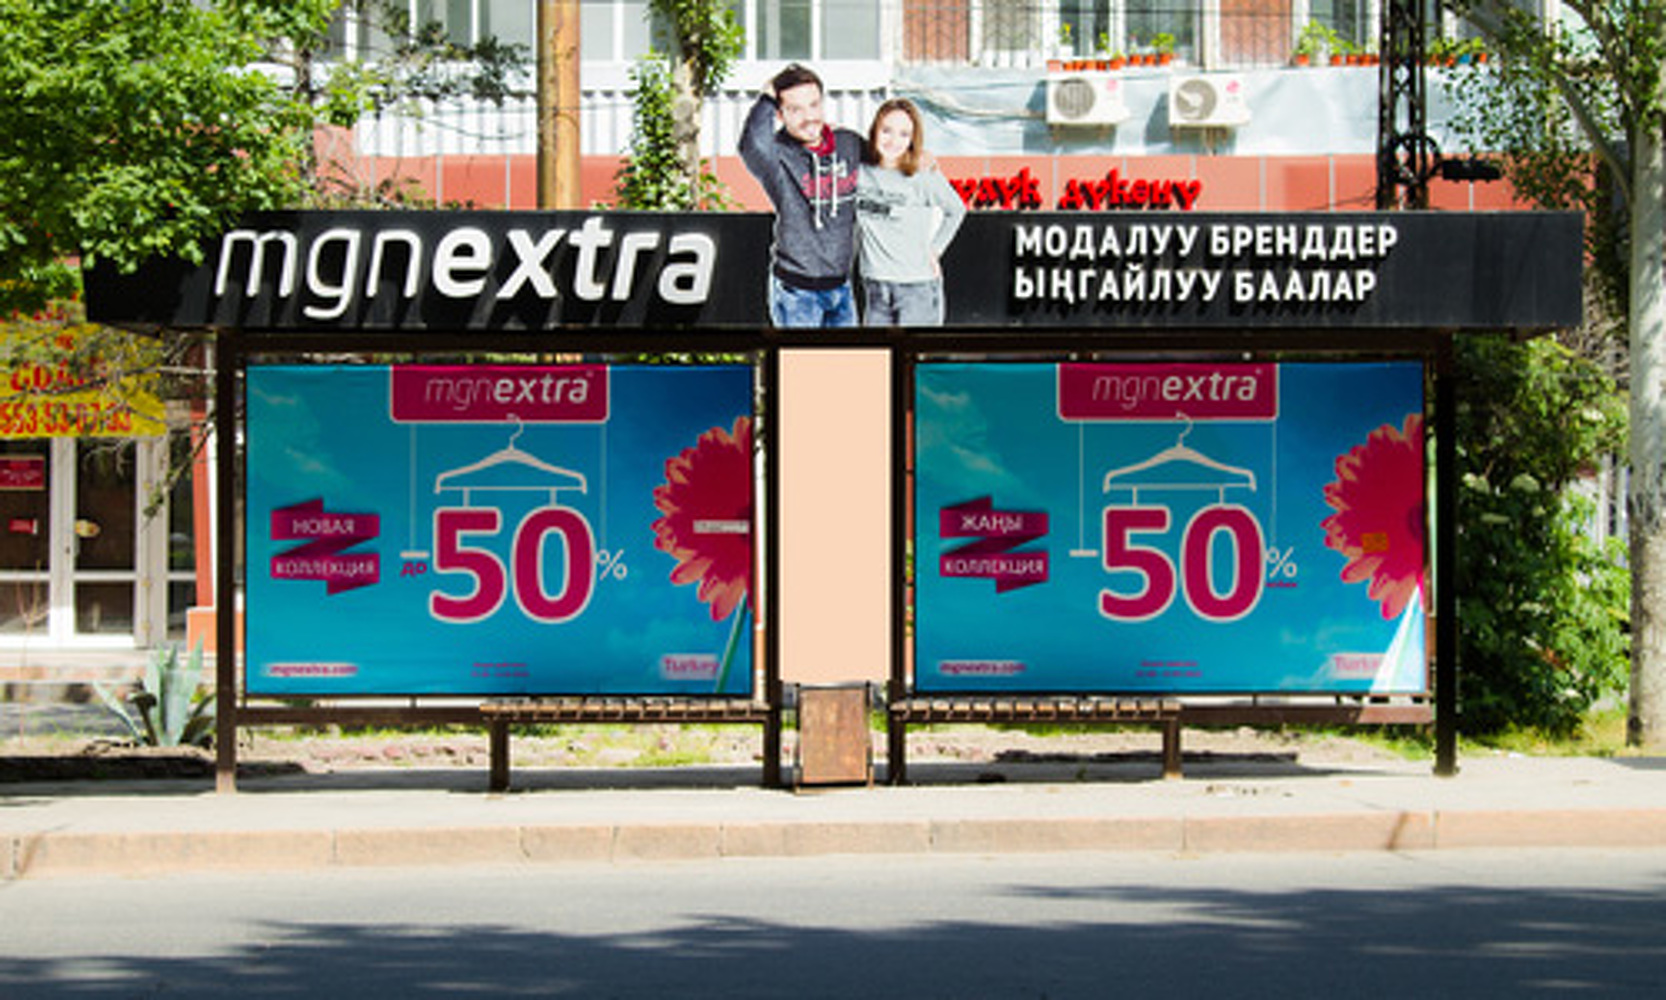 В Бишкеке изменились правила размещения наружной рекламы. Что нового? — Today.kg